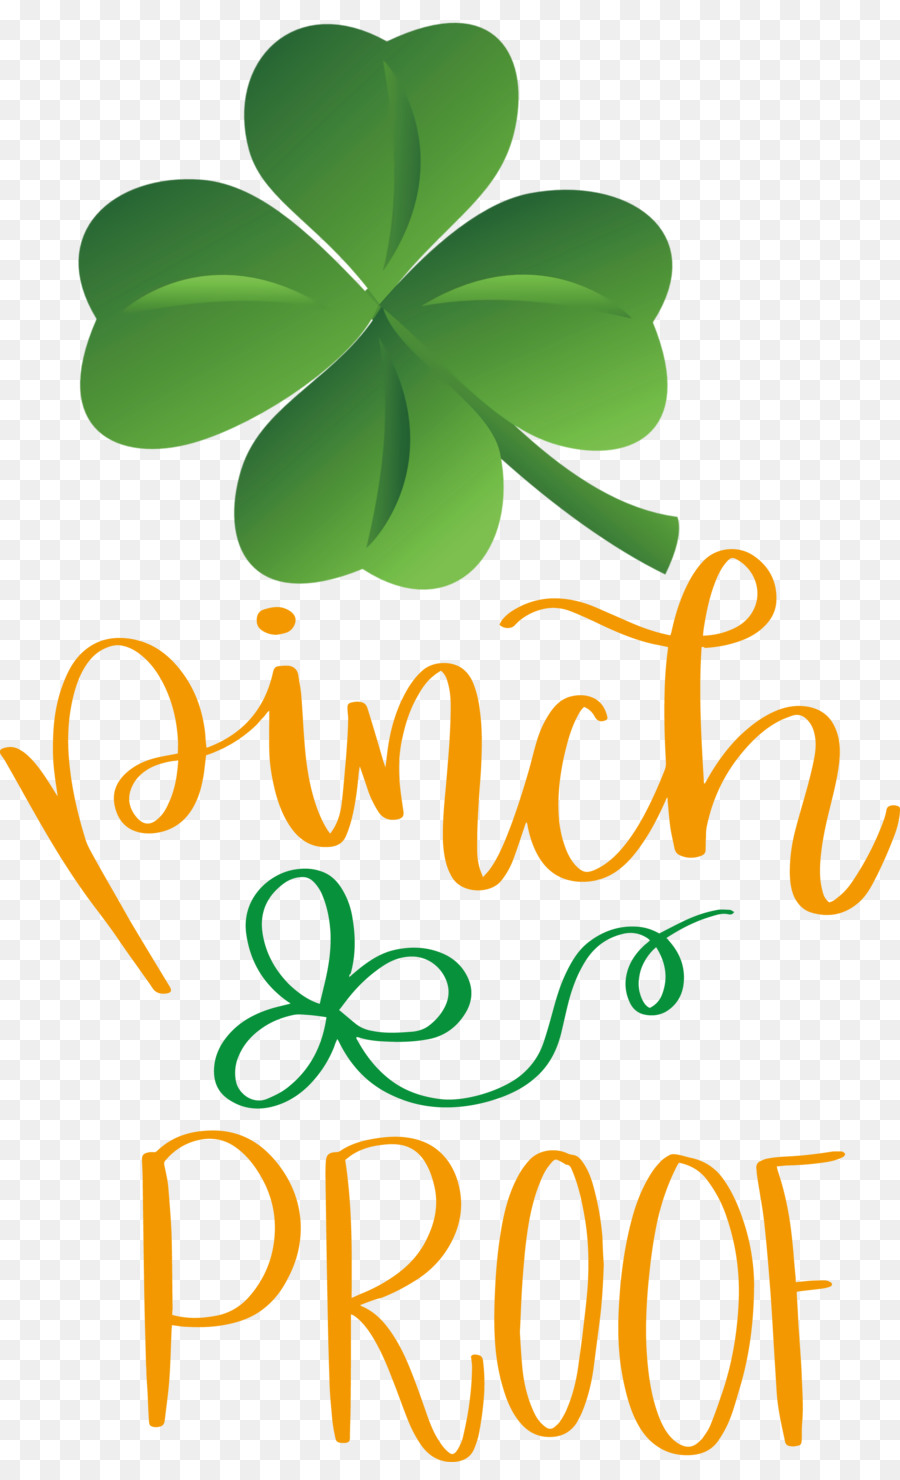 Pinch Proof Ngày yêu nước Saint Patrick - 